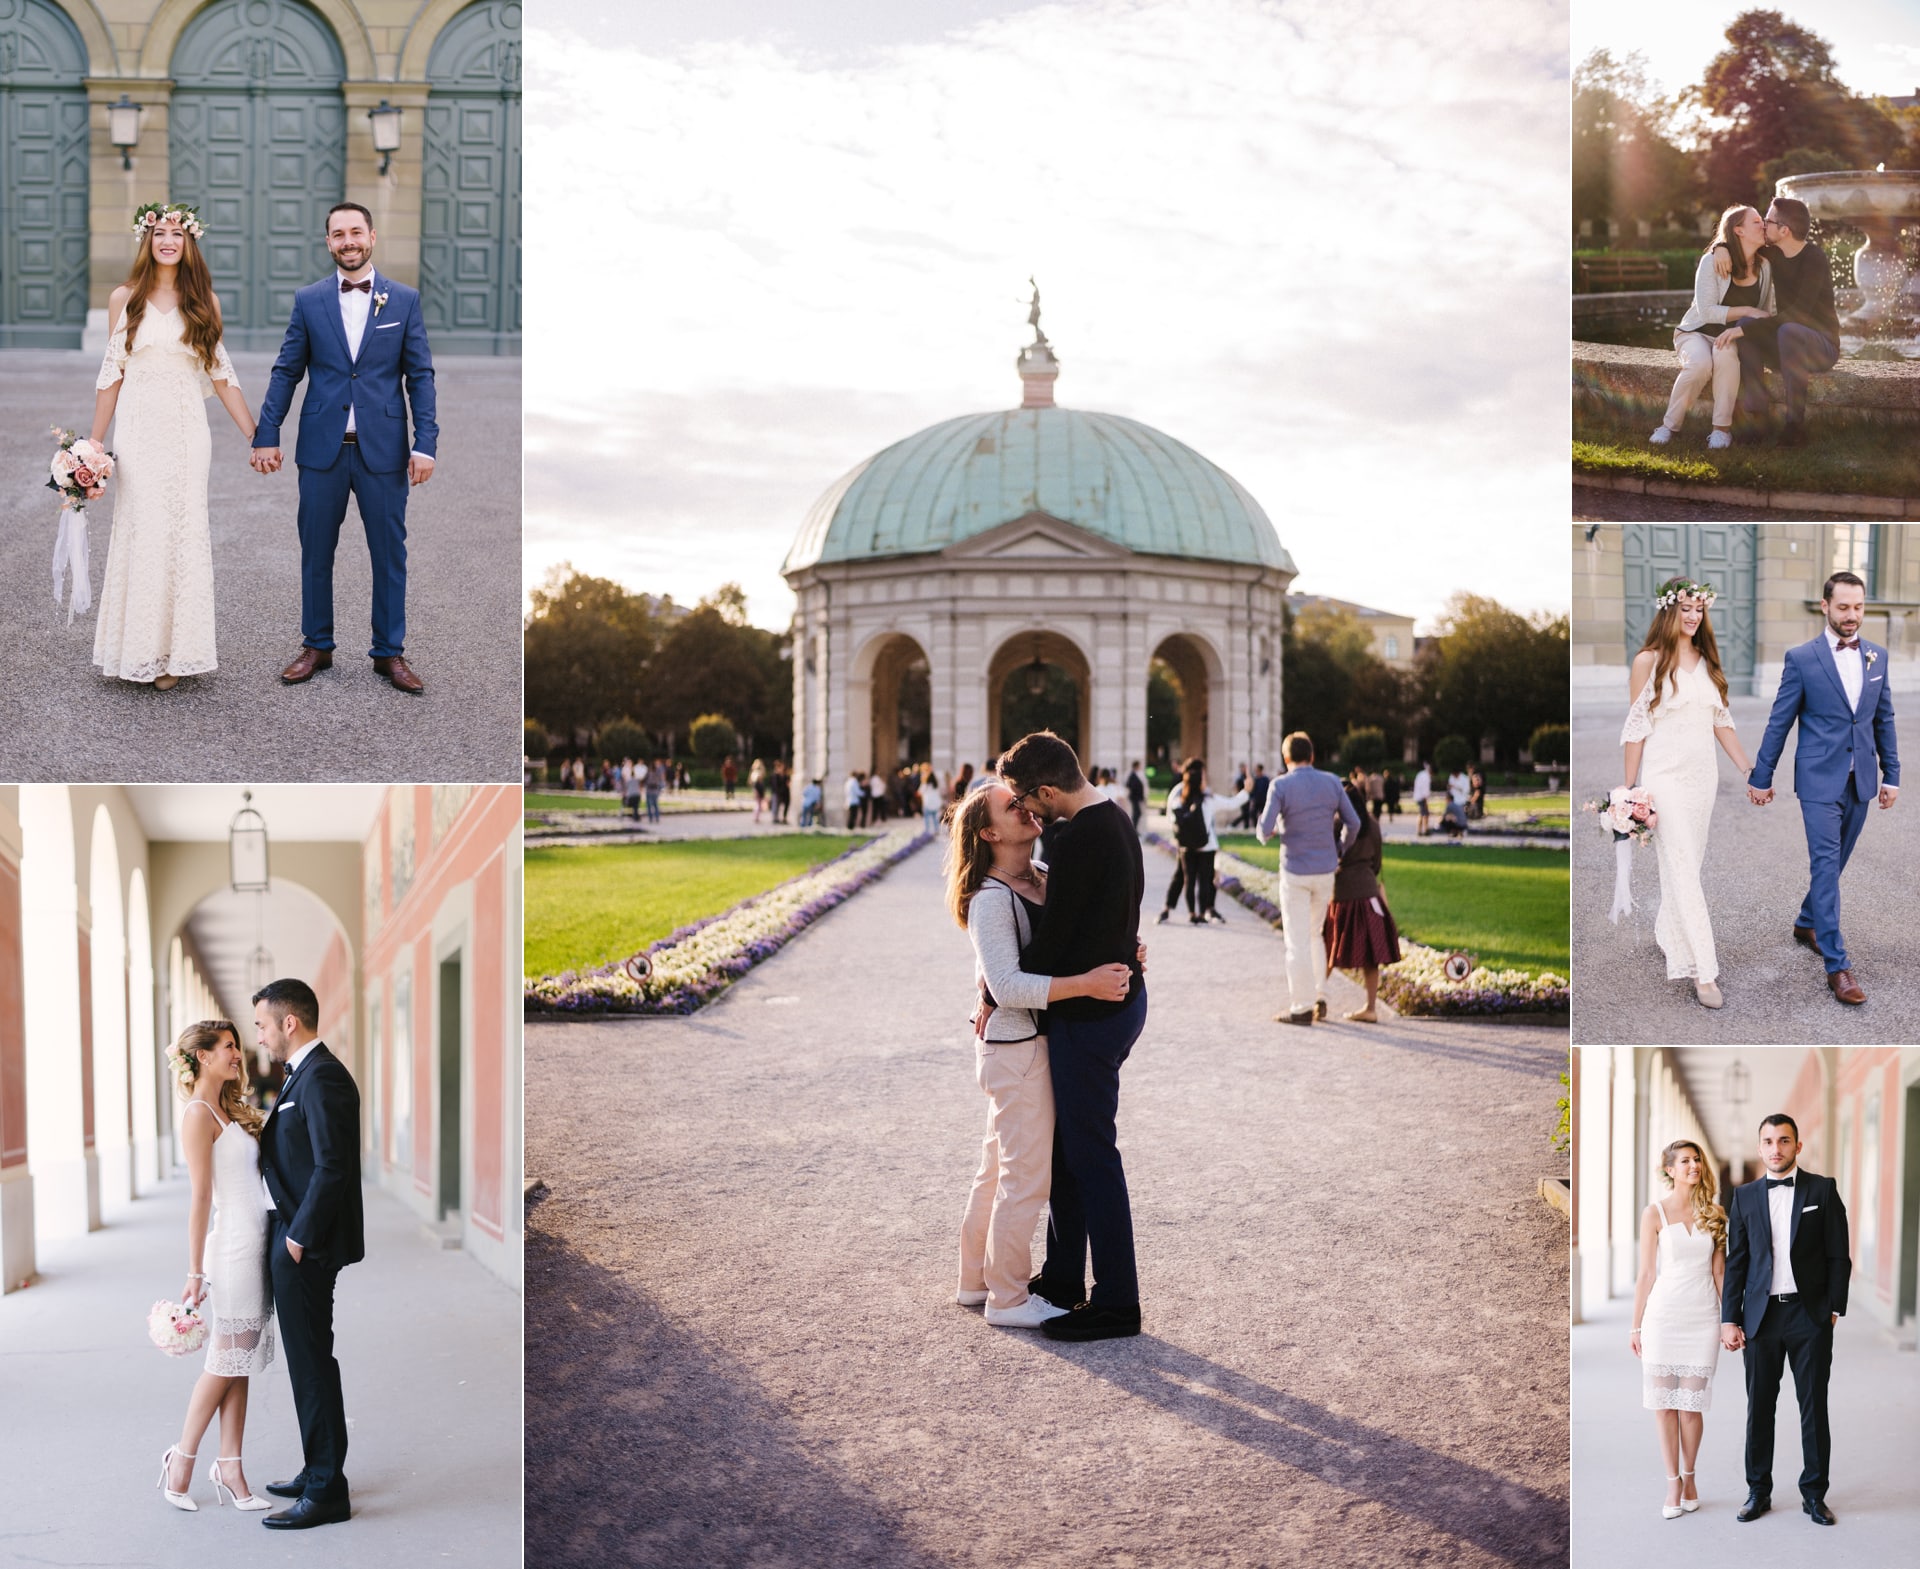 Hofgarten mit Brautpaaren. Kuss vor dem Pavillon, Paar küsst sich vor dem Brunnen im Hofgarten. Eines der besten Fotolocations für Hochzeitspaare in München.